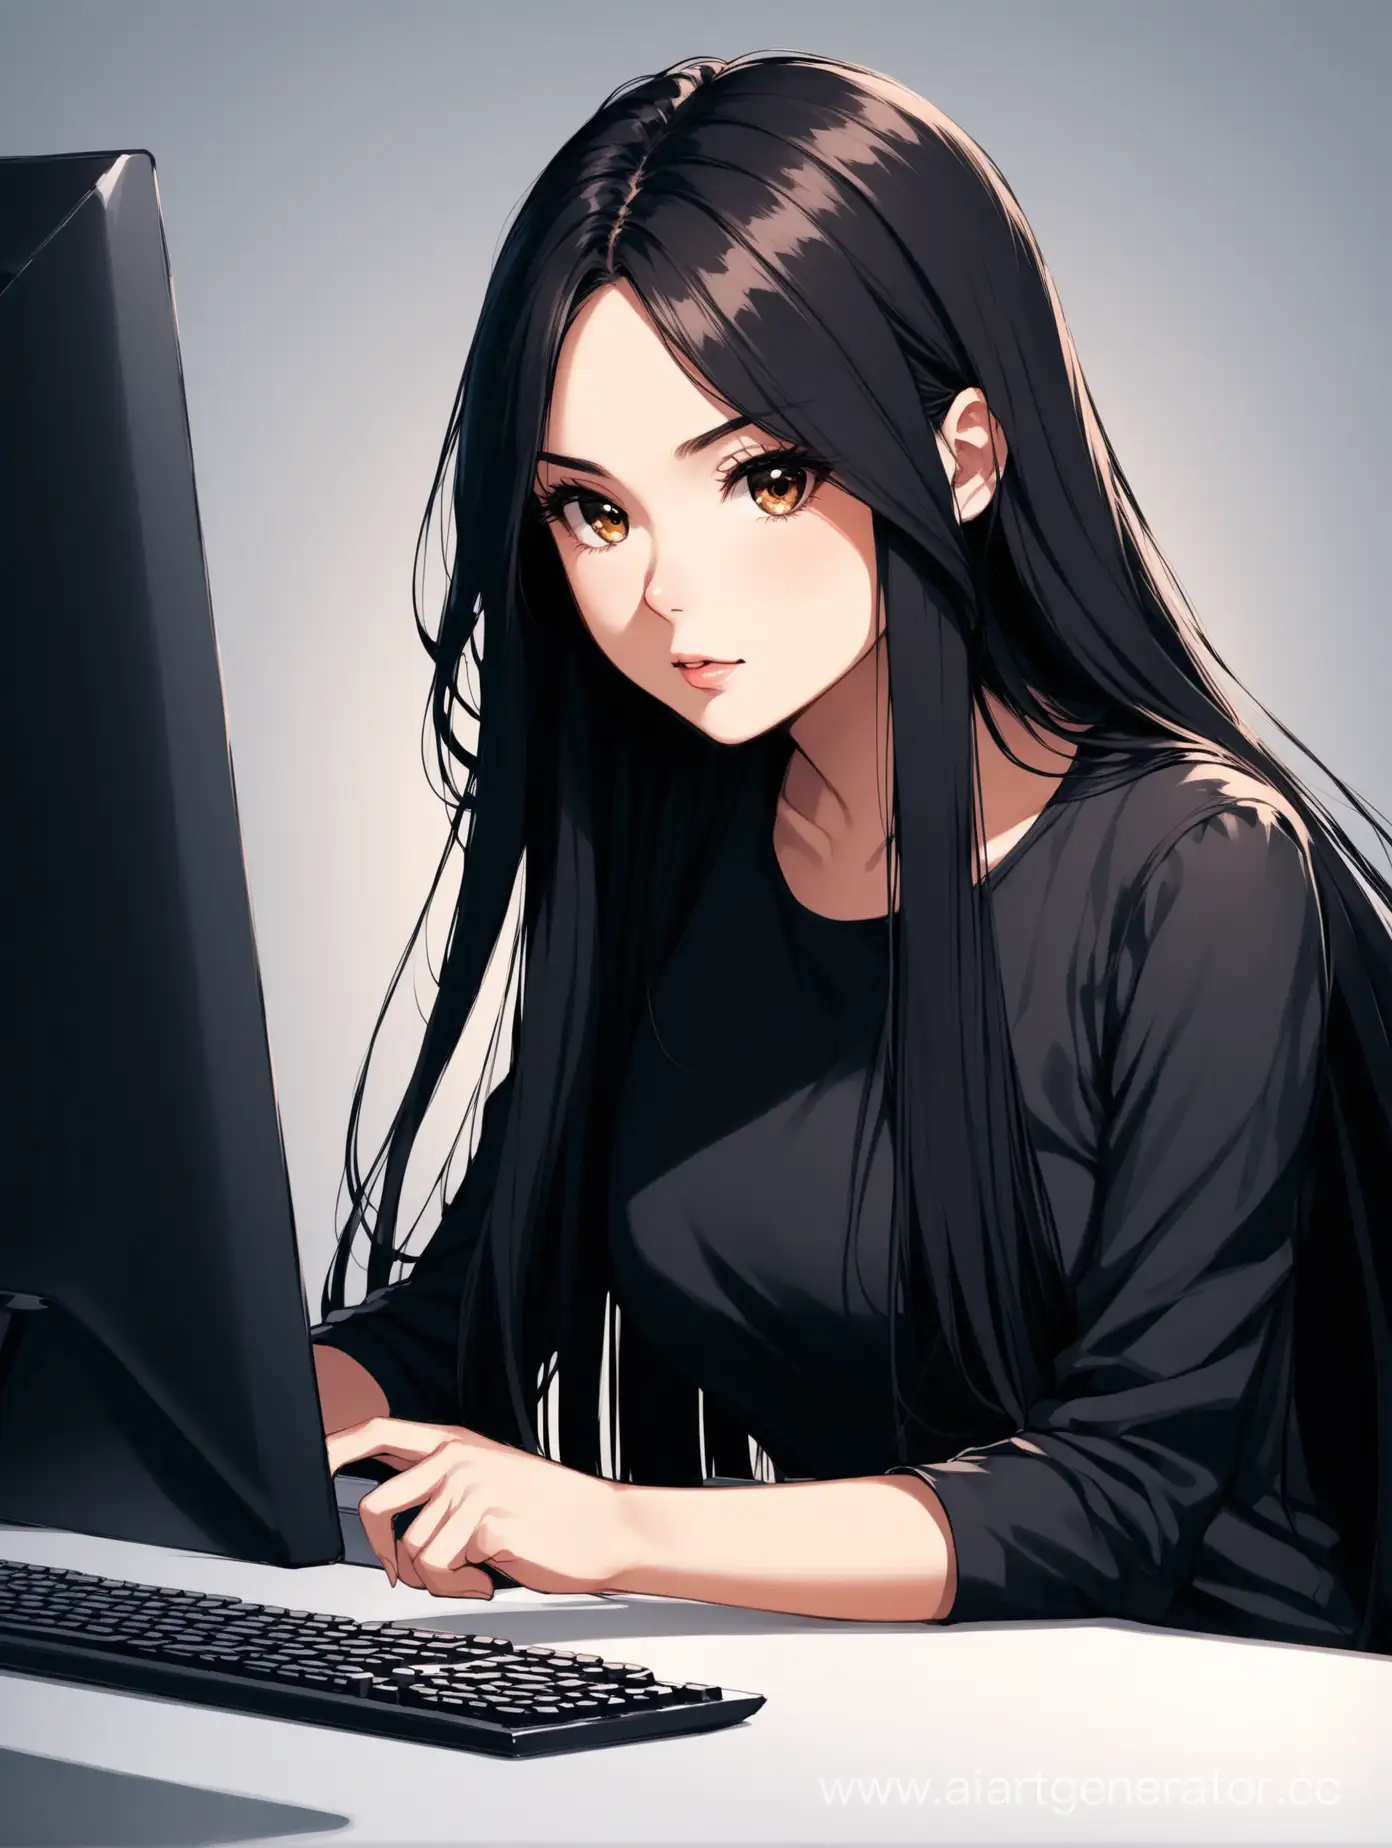 DarkHaired-Girl-Designer-Working-at-Computer